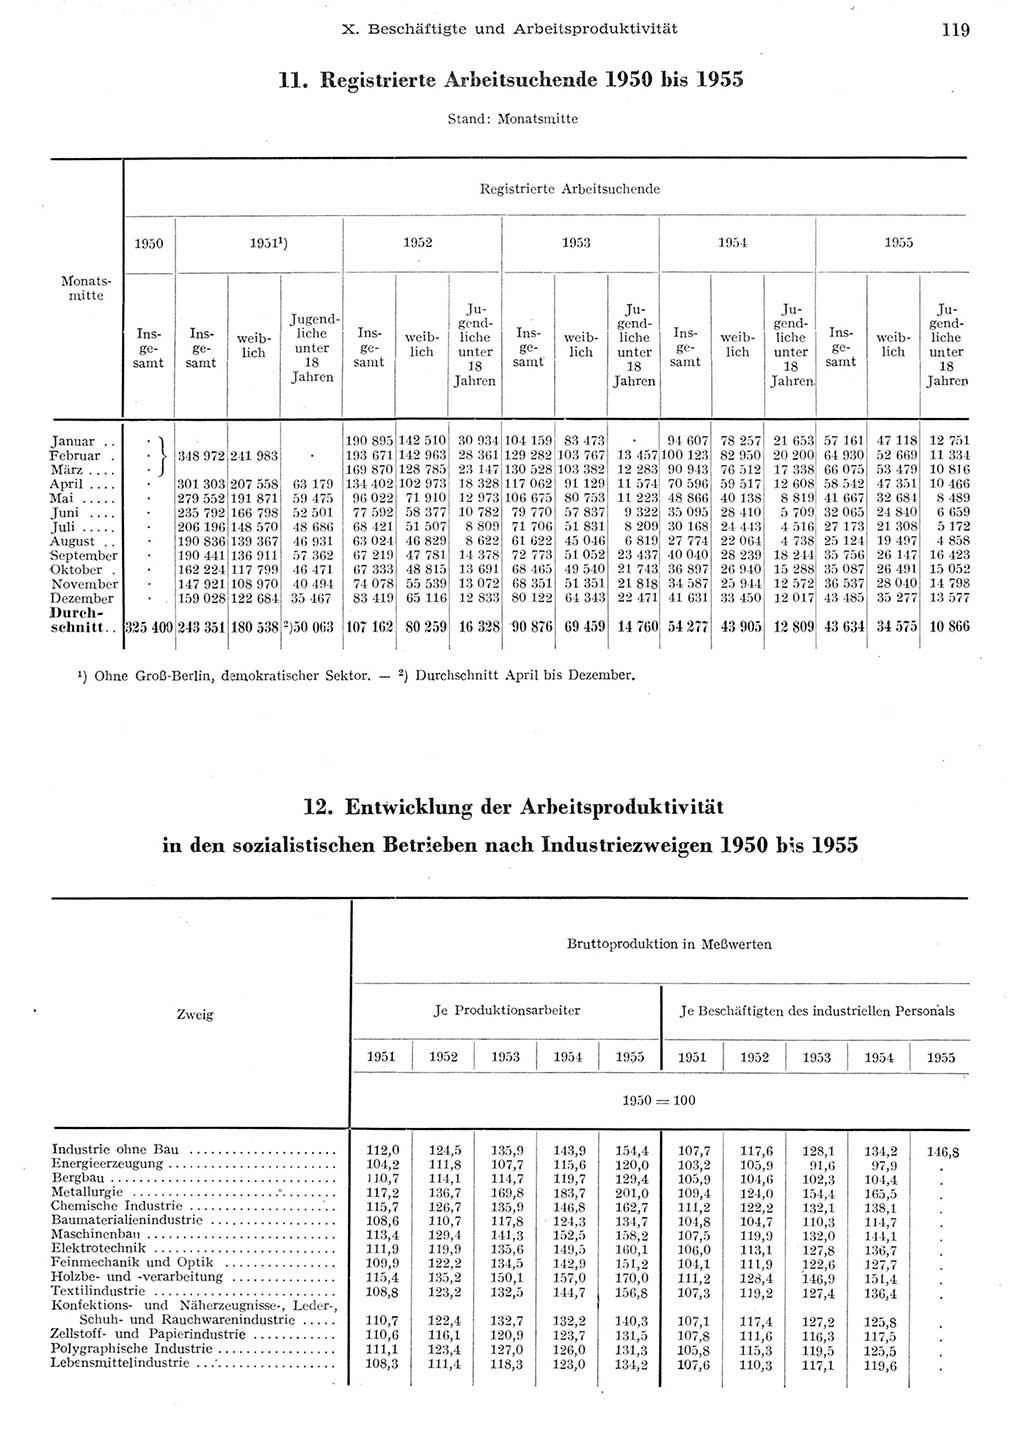 Statistisches Jahrbuch der Deutschen Demokratischen Republik (DDR) 1955, Seite 119 (Stat. Jb. DDR 1955, S. 119)